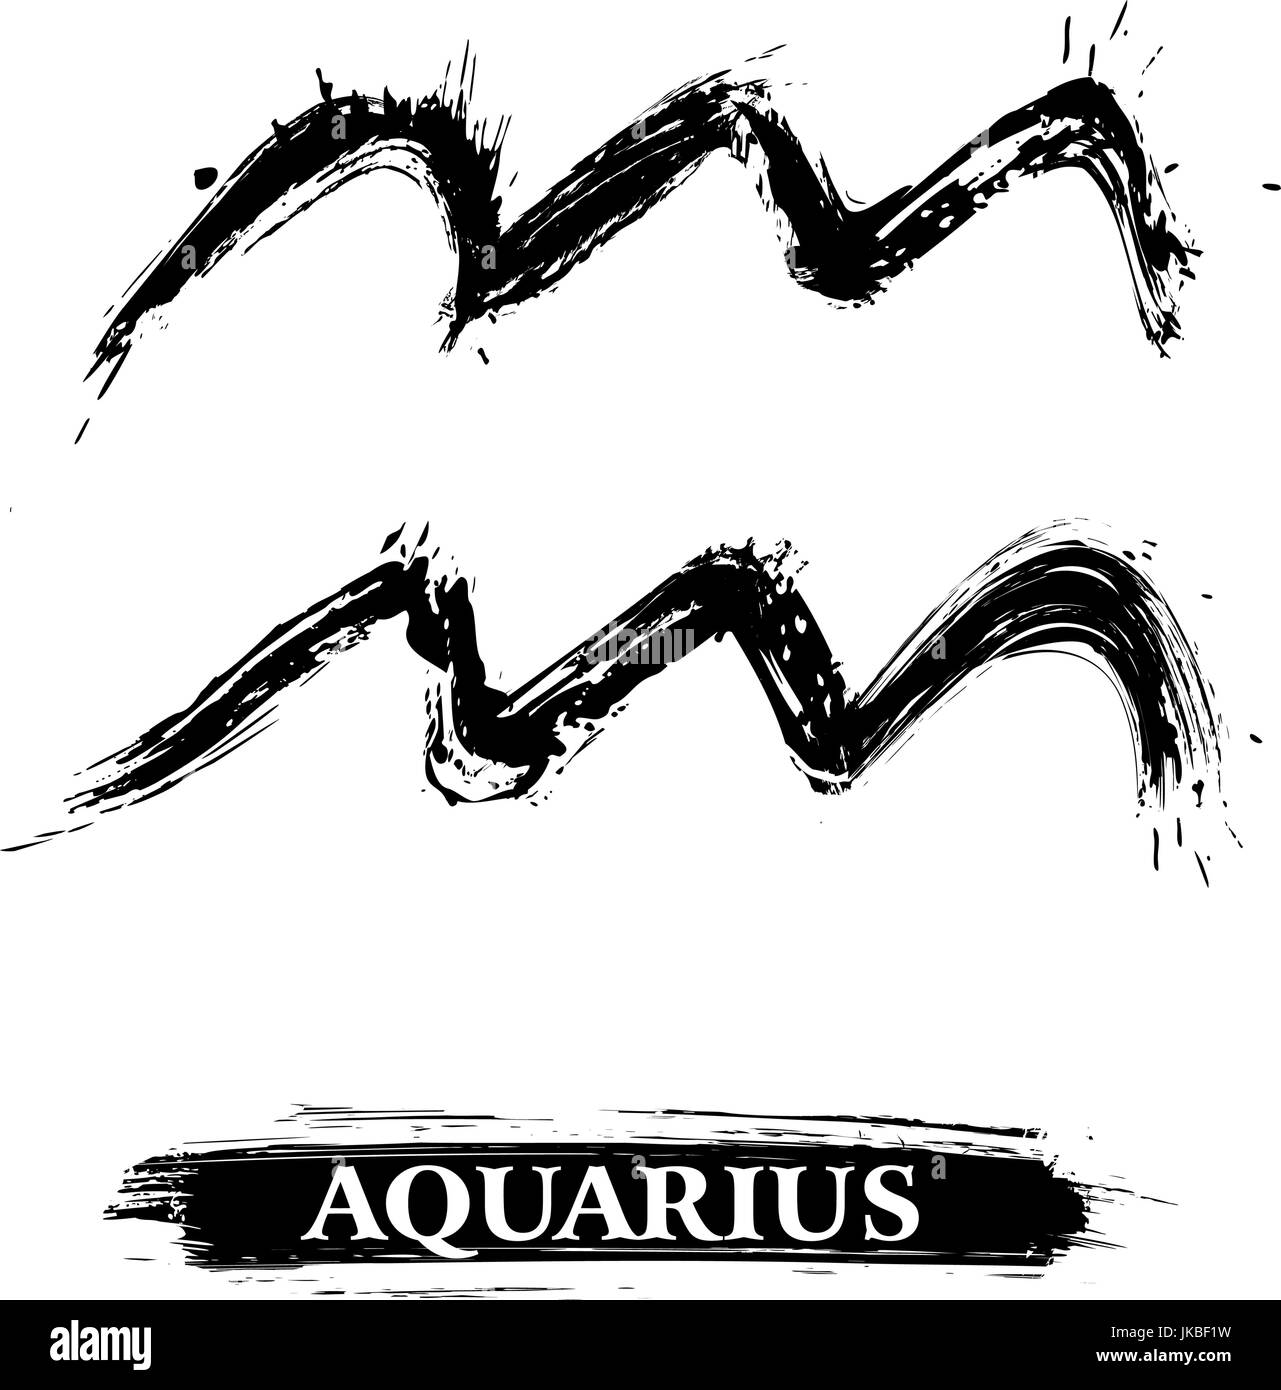 Aquarius symbol Stock Vector